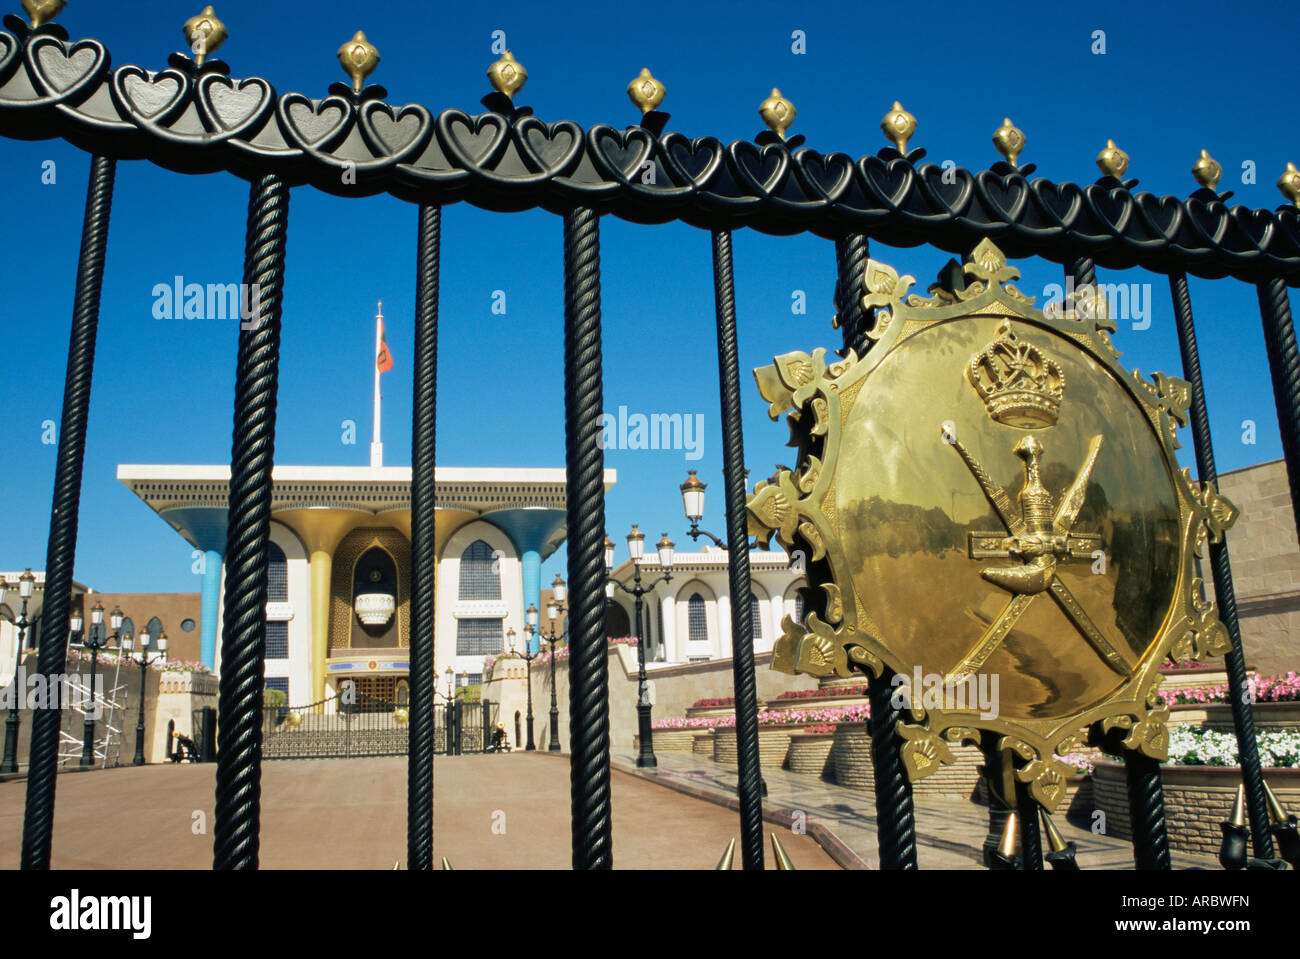 Cancello di ingresso con protezione, Palazzo del Sultano, città murata di Muscat, Muscat Oman, Medio Oriente Foto Stock